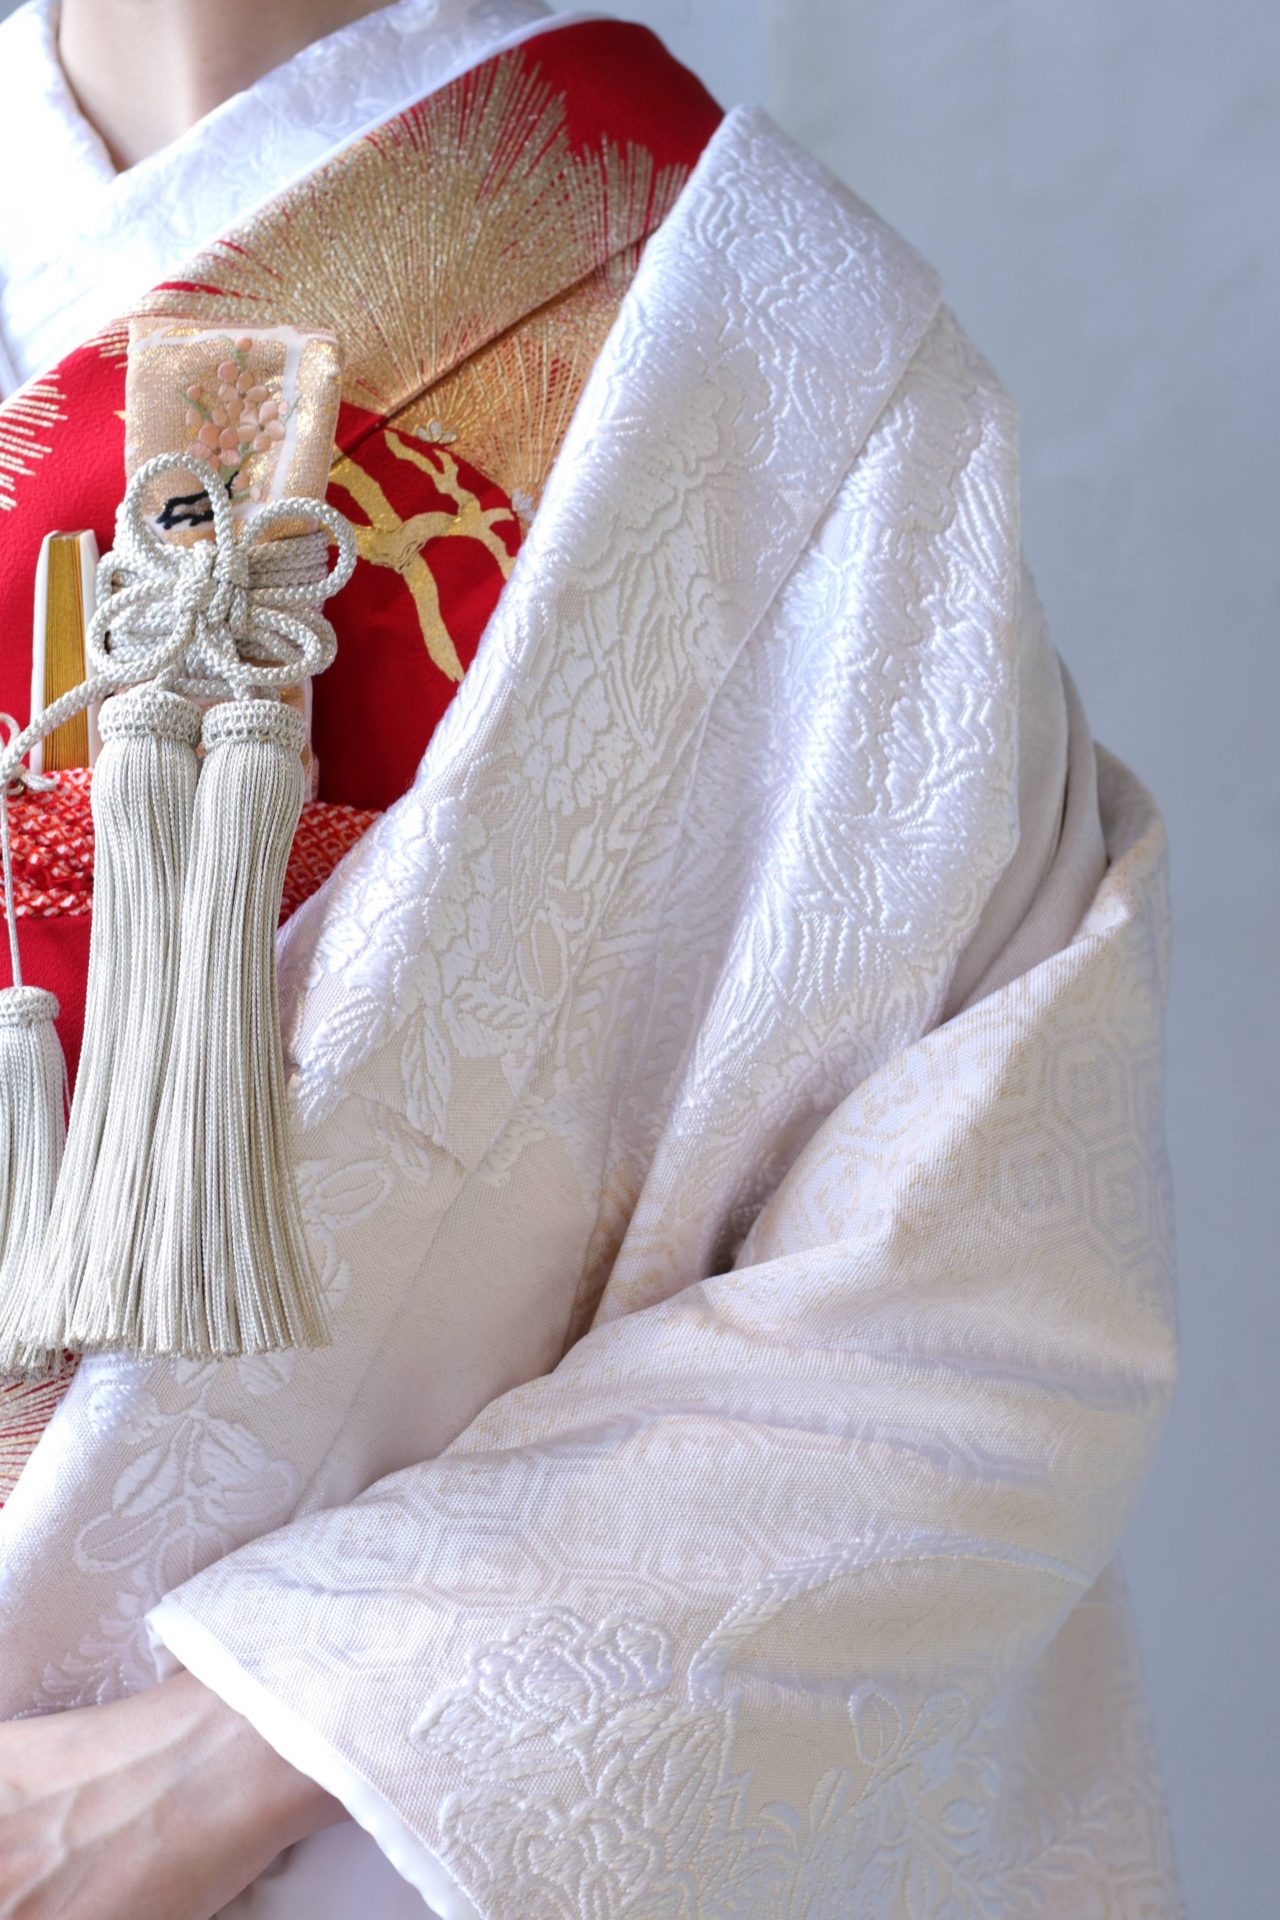 アットホームな結婚式では、白無垢に赤の掛下と金とピンクの小物を合わせると優しい印象になります。